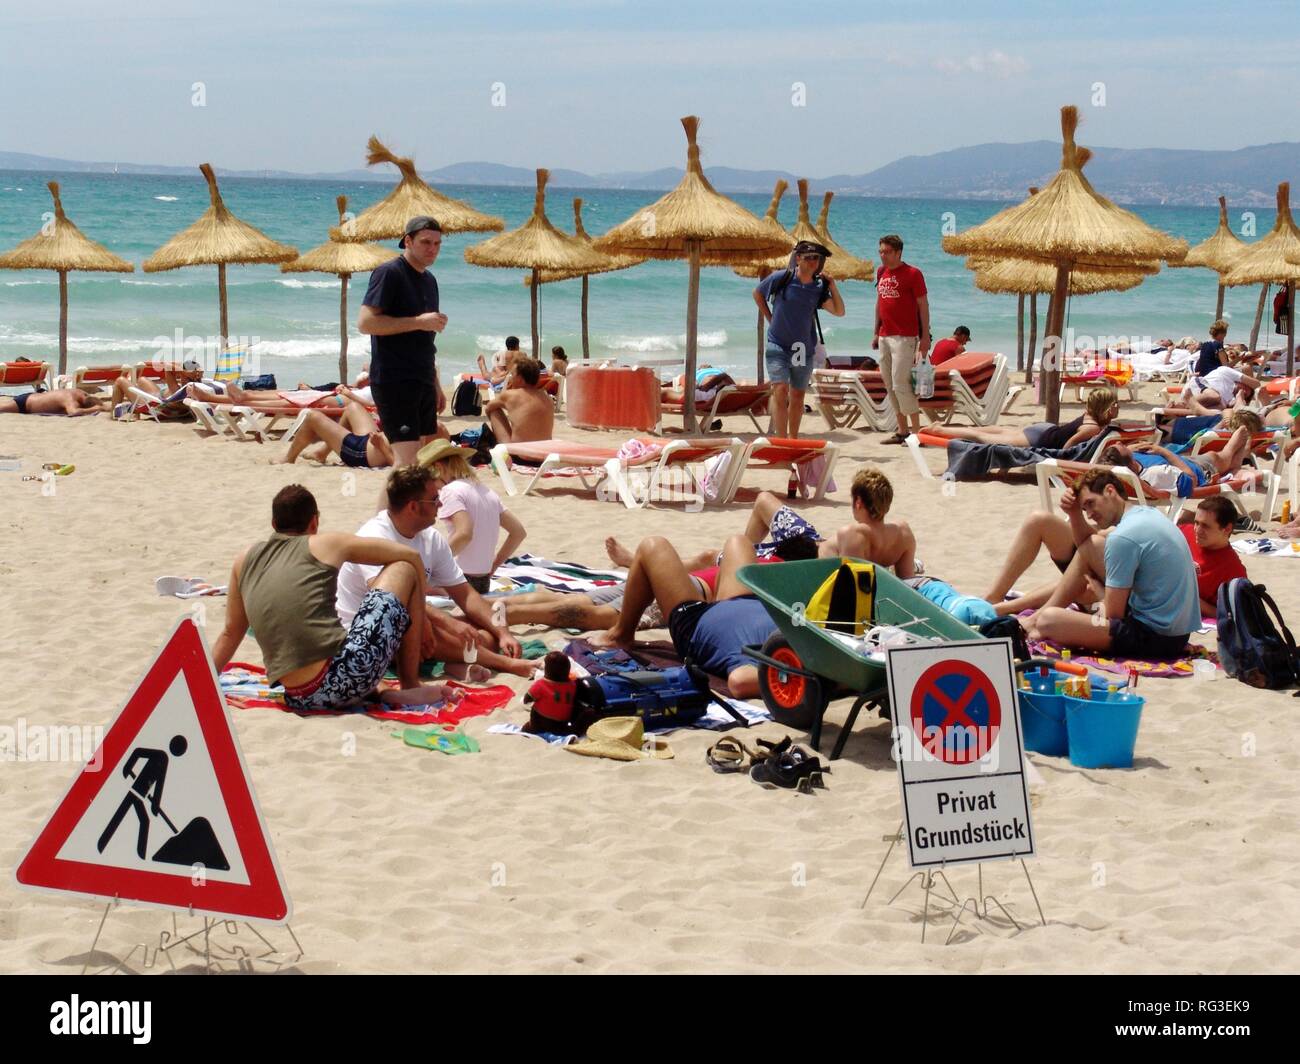 ESP, España, Islas Baleares, Mallorca : Playa de S'Arenal, la bahía de Palma, el turismo de masas, los turistas alemanes marcó su playa Foto de stock